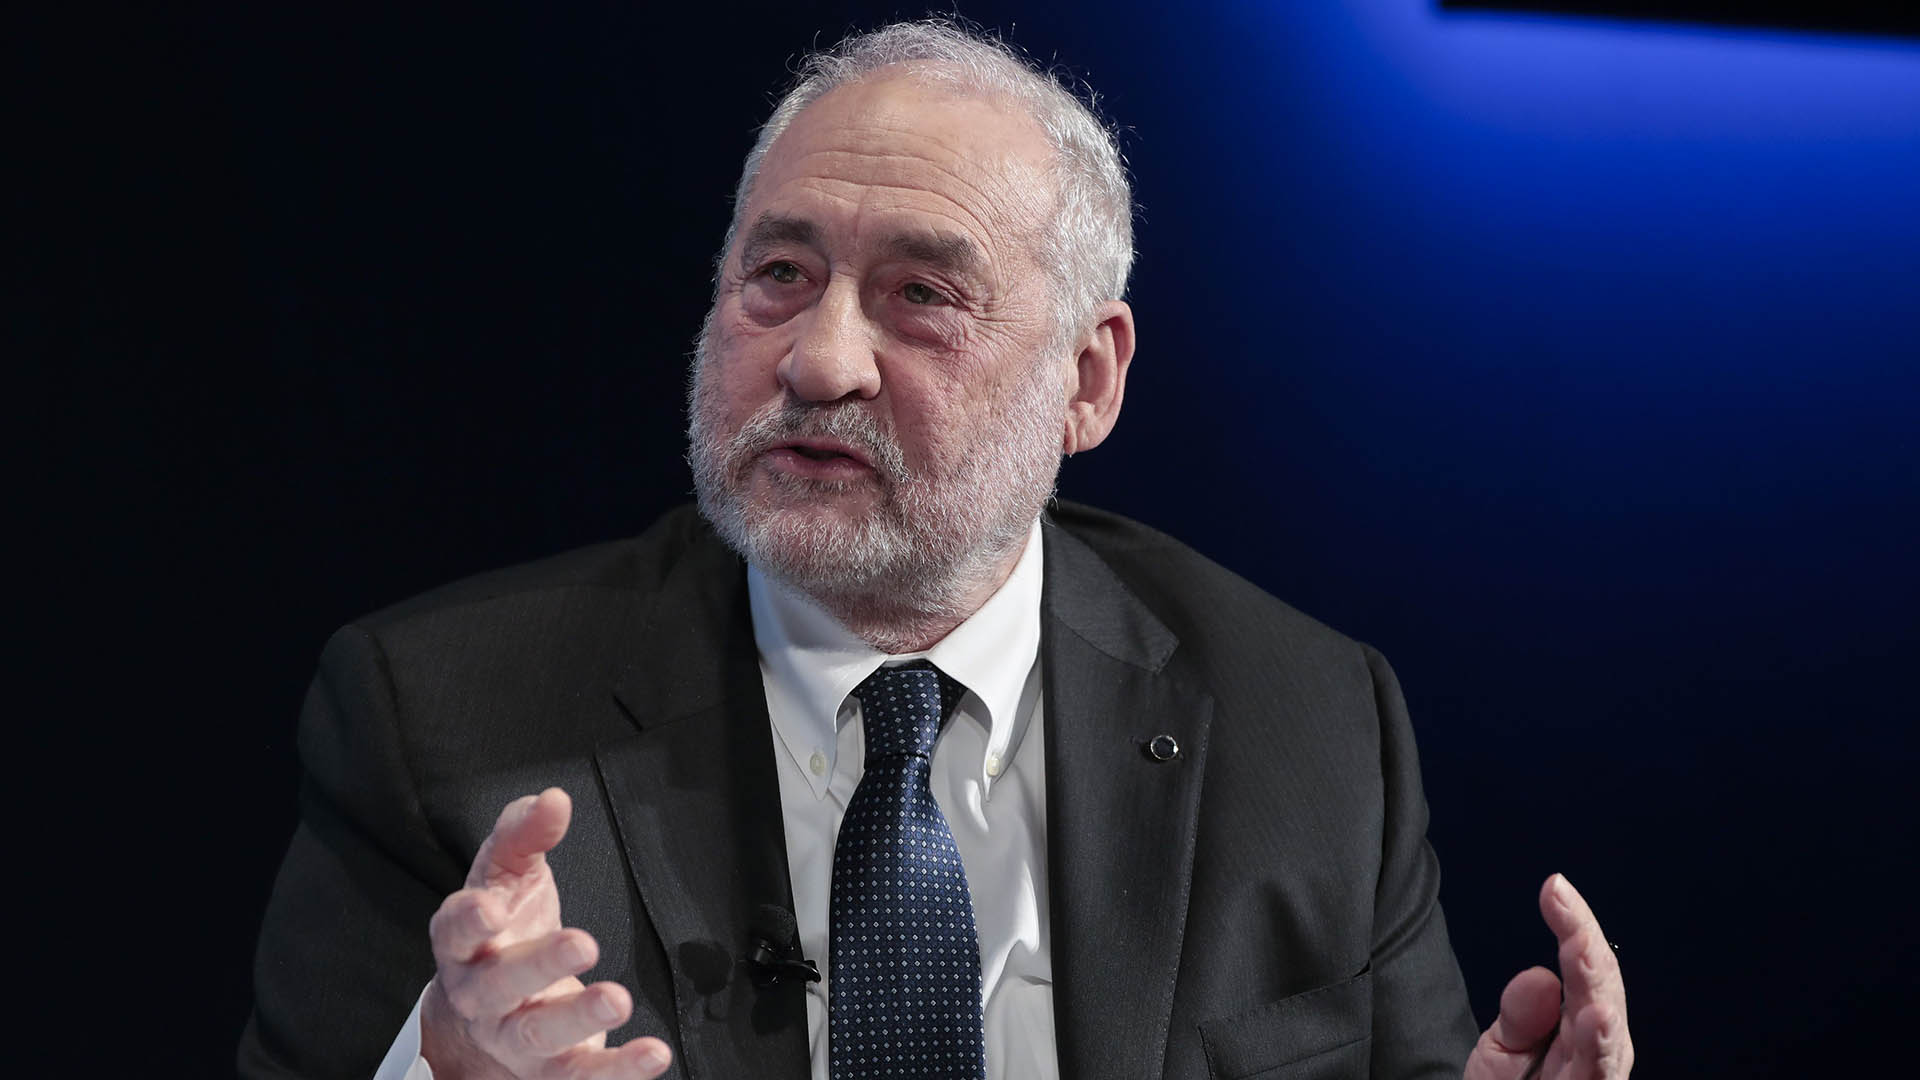 Joseph Stiglitz, escribió en su libro El precio de la desigualdad: “el 1% de la sociedad tiene lo que el otro 99% necesita”. La conclusión parece obvia: hay que quitar este capital a aquellos a quienes les sobra y repartirlo entre aquellos a quienes les falta (Bloomberg)